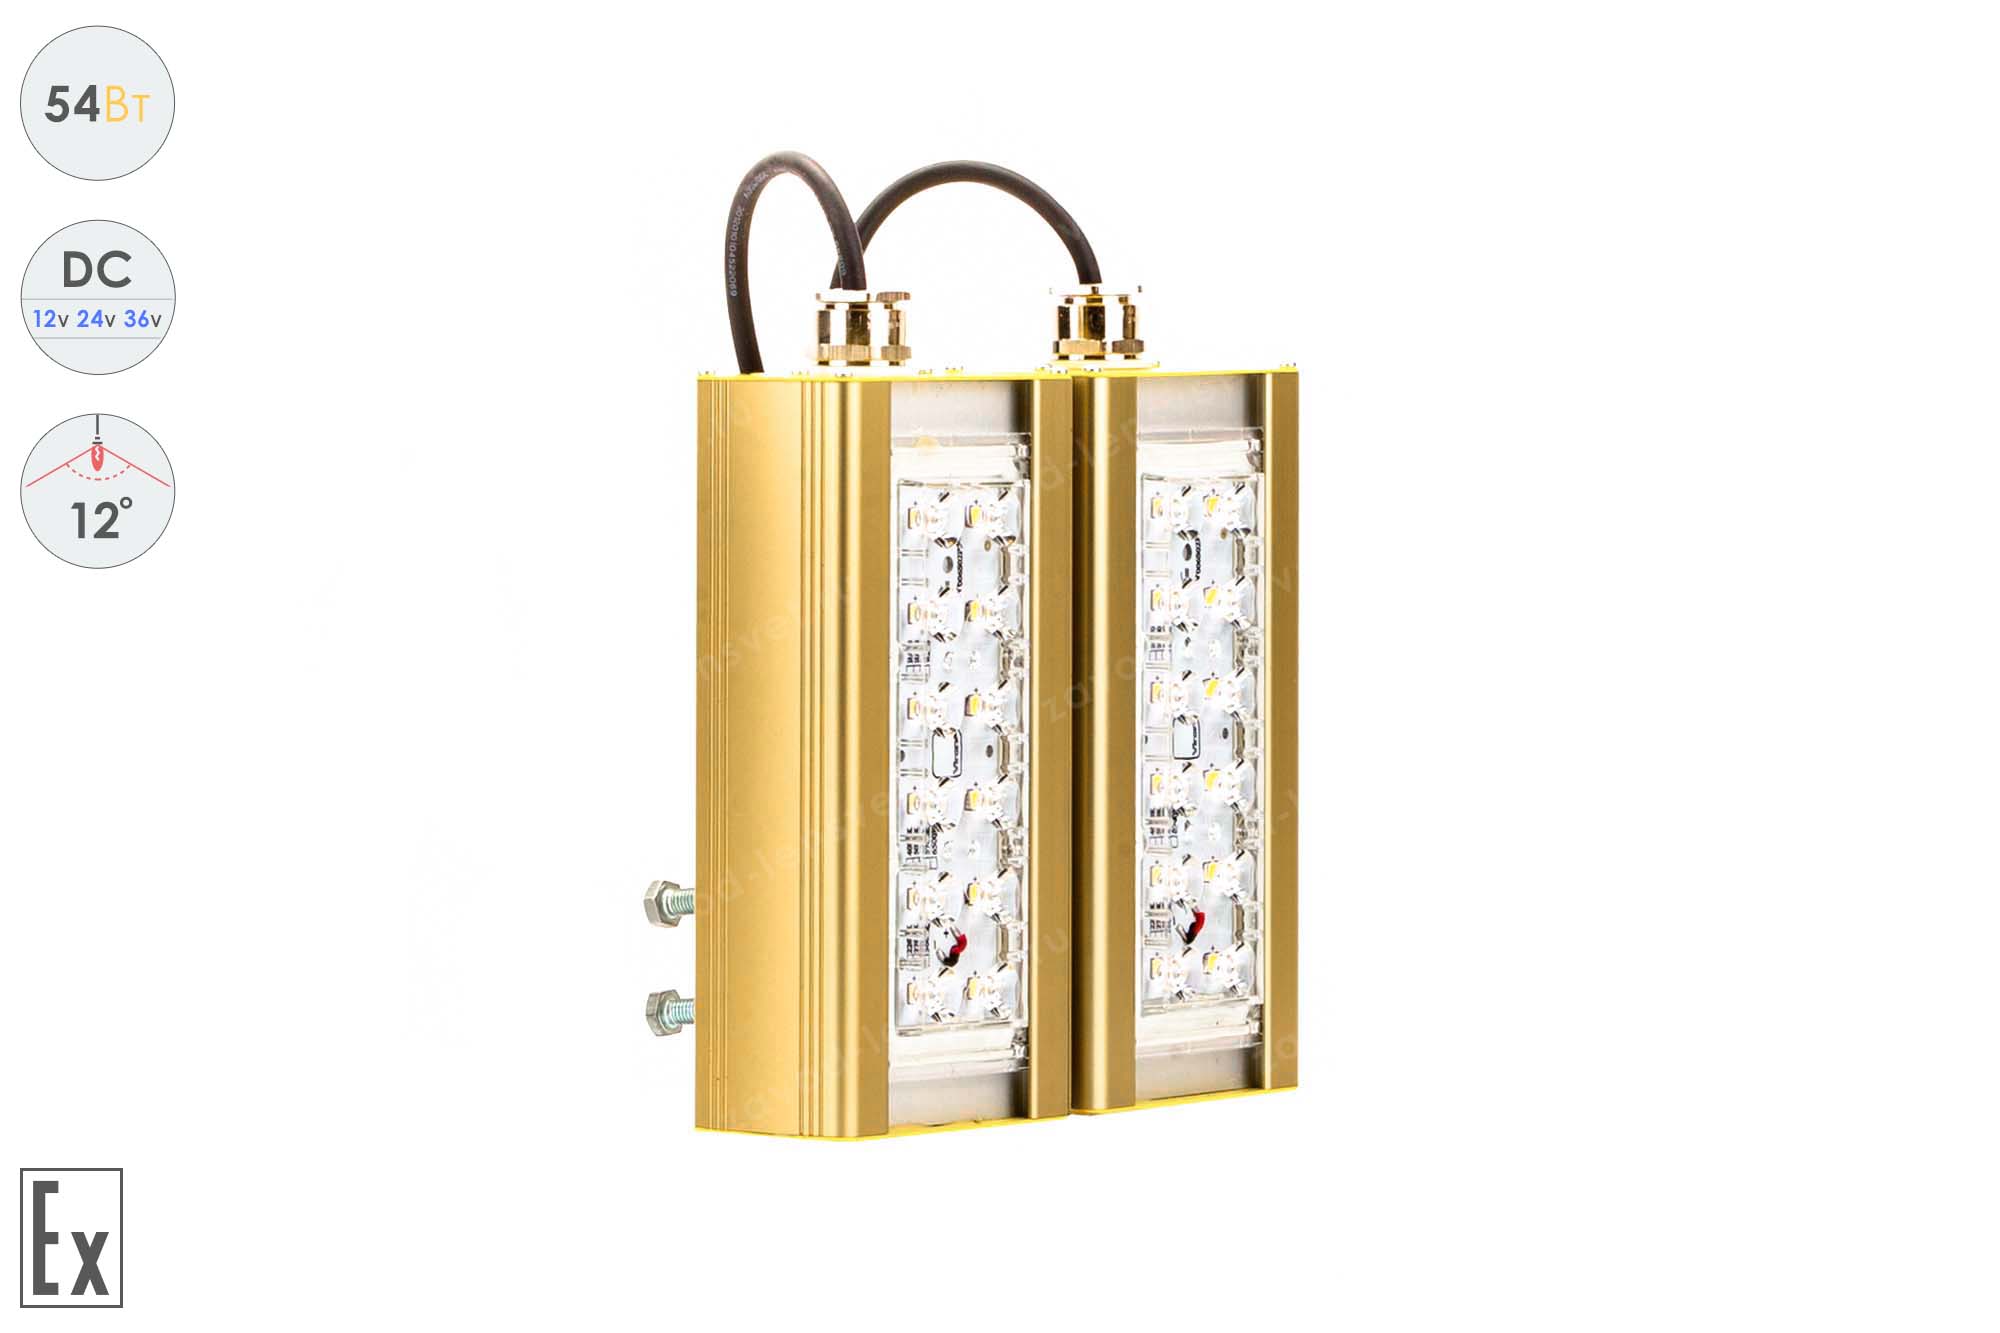 Низковольтный светодиодный светильник Прожектор Взрывозащищенный GOLD, консоль K-2 , 54 Вт, 12° 